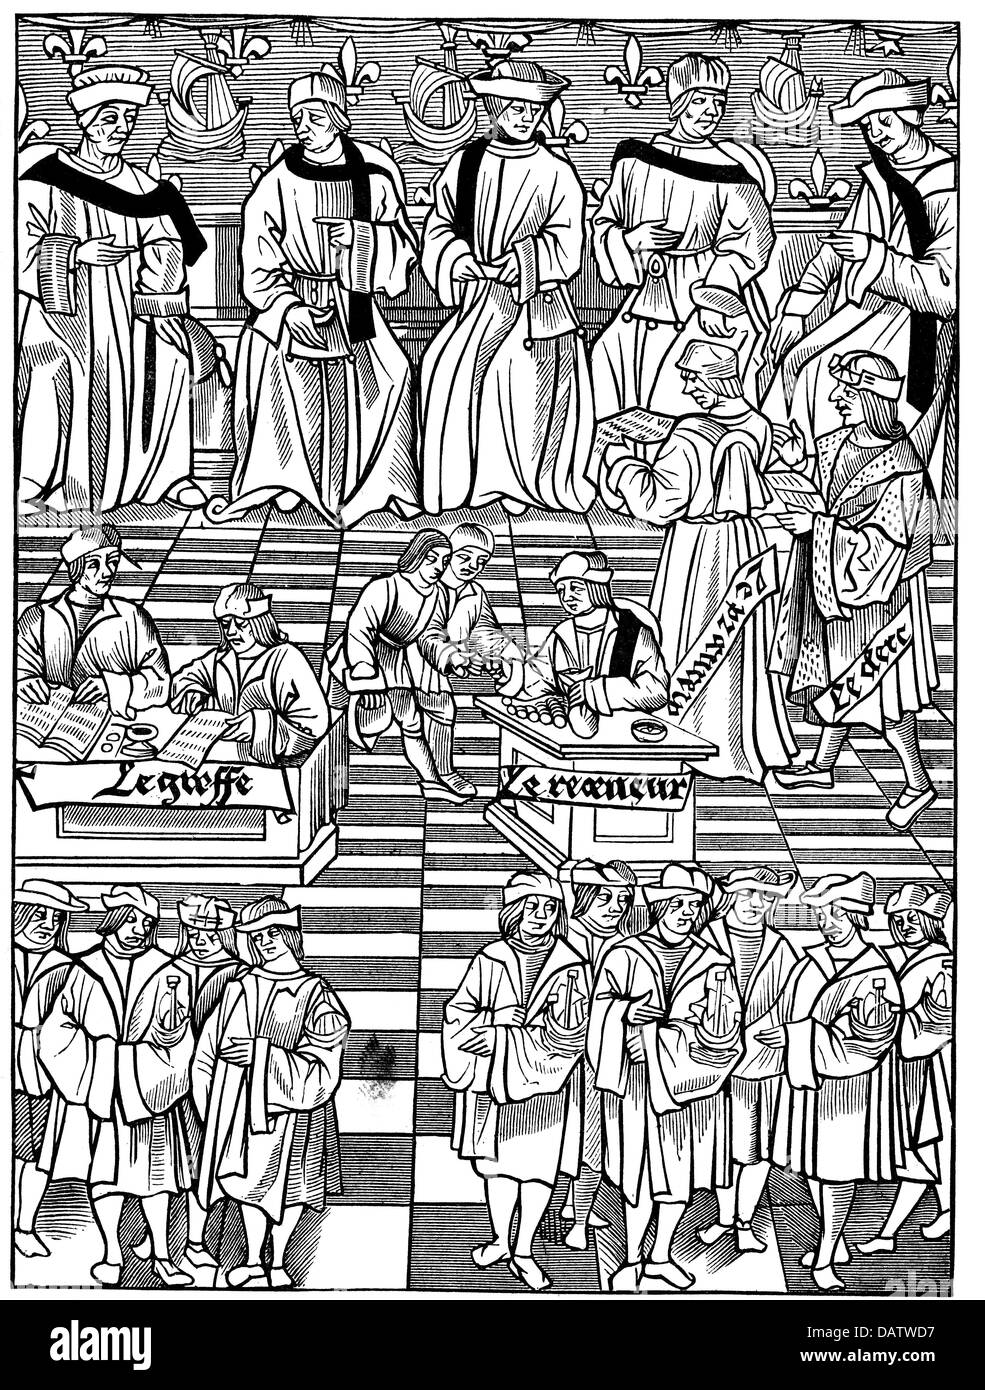 Commercio, commercianti, riunione del consiglio esecutivo dei commercianti parigini, taglio di legno, da Jacques Nyverd, 1528, diritti aggiuntivi-clearences-non disponibile Foto Stock